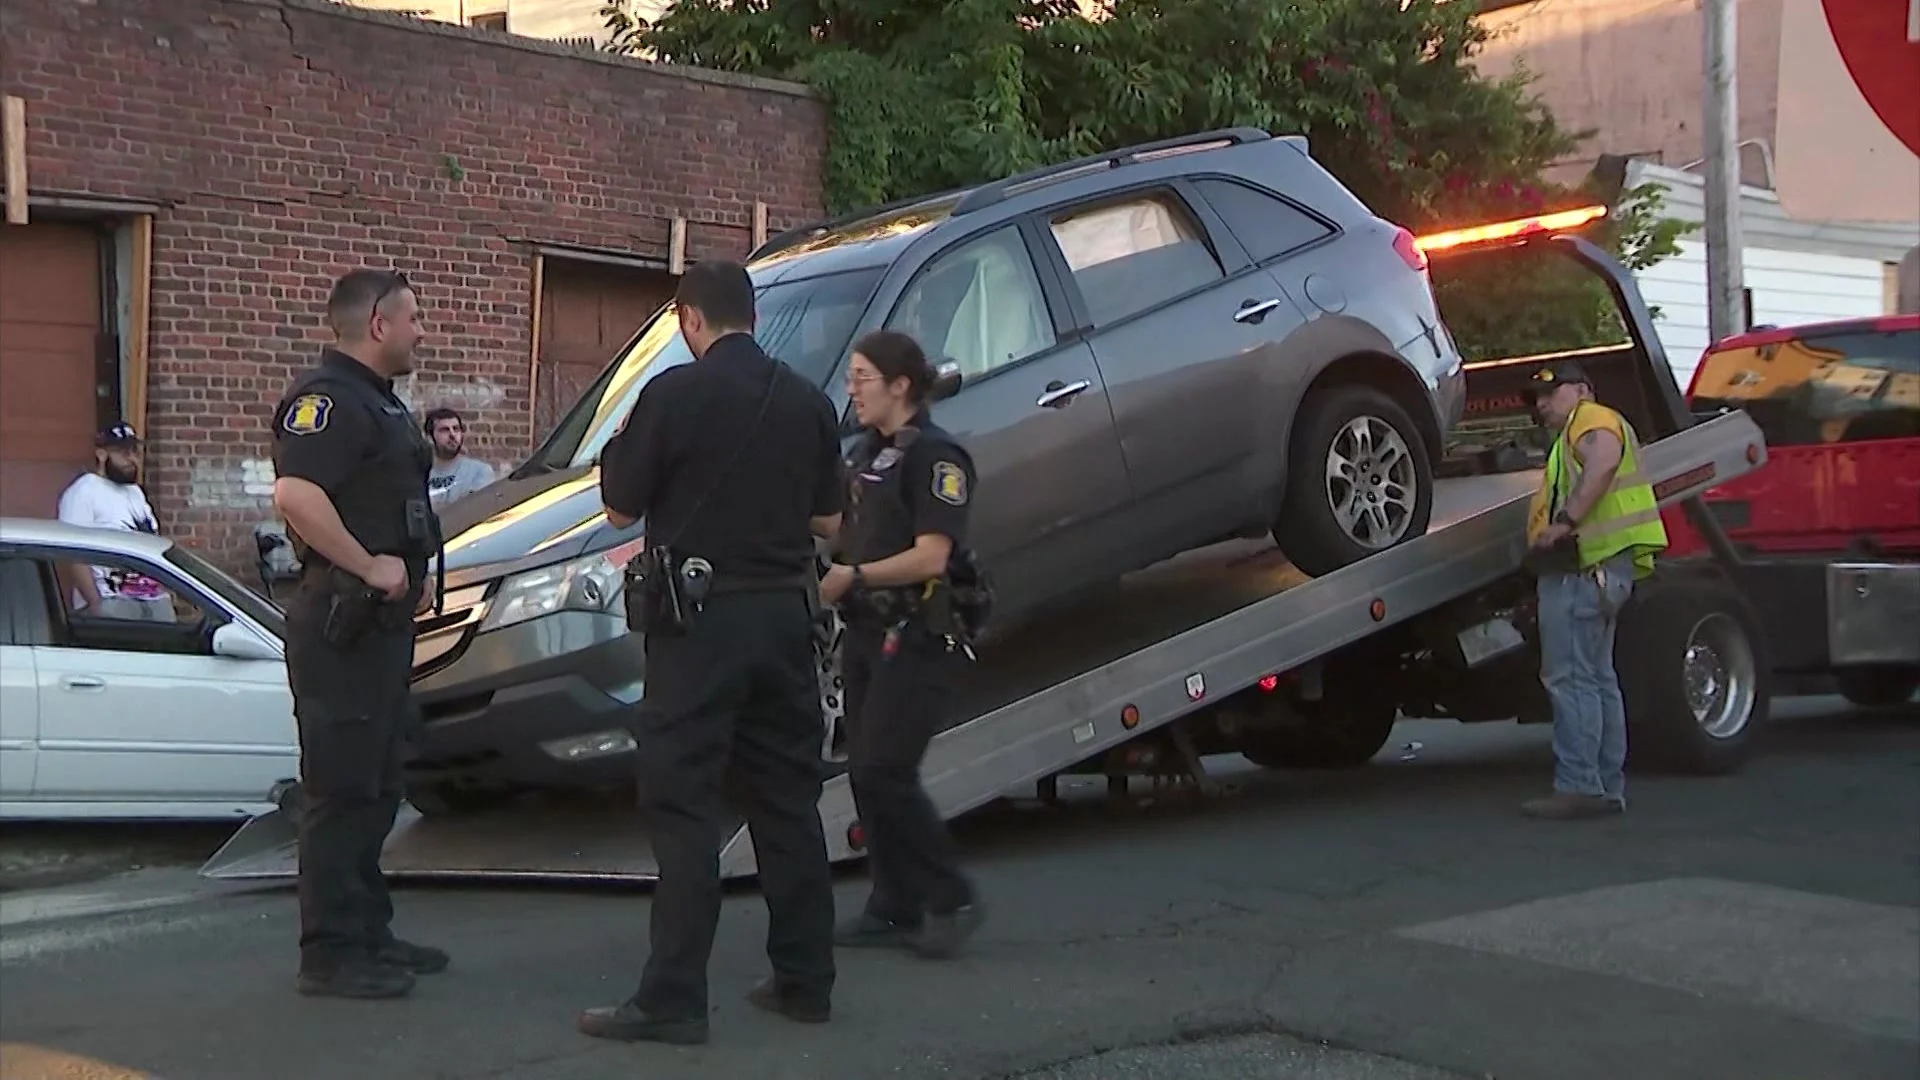 Yonkers police: 2 men injured in suspected DWI crash; driver taken into custody